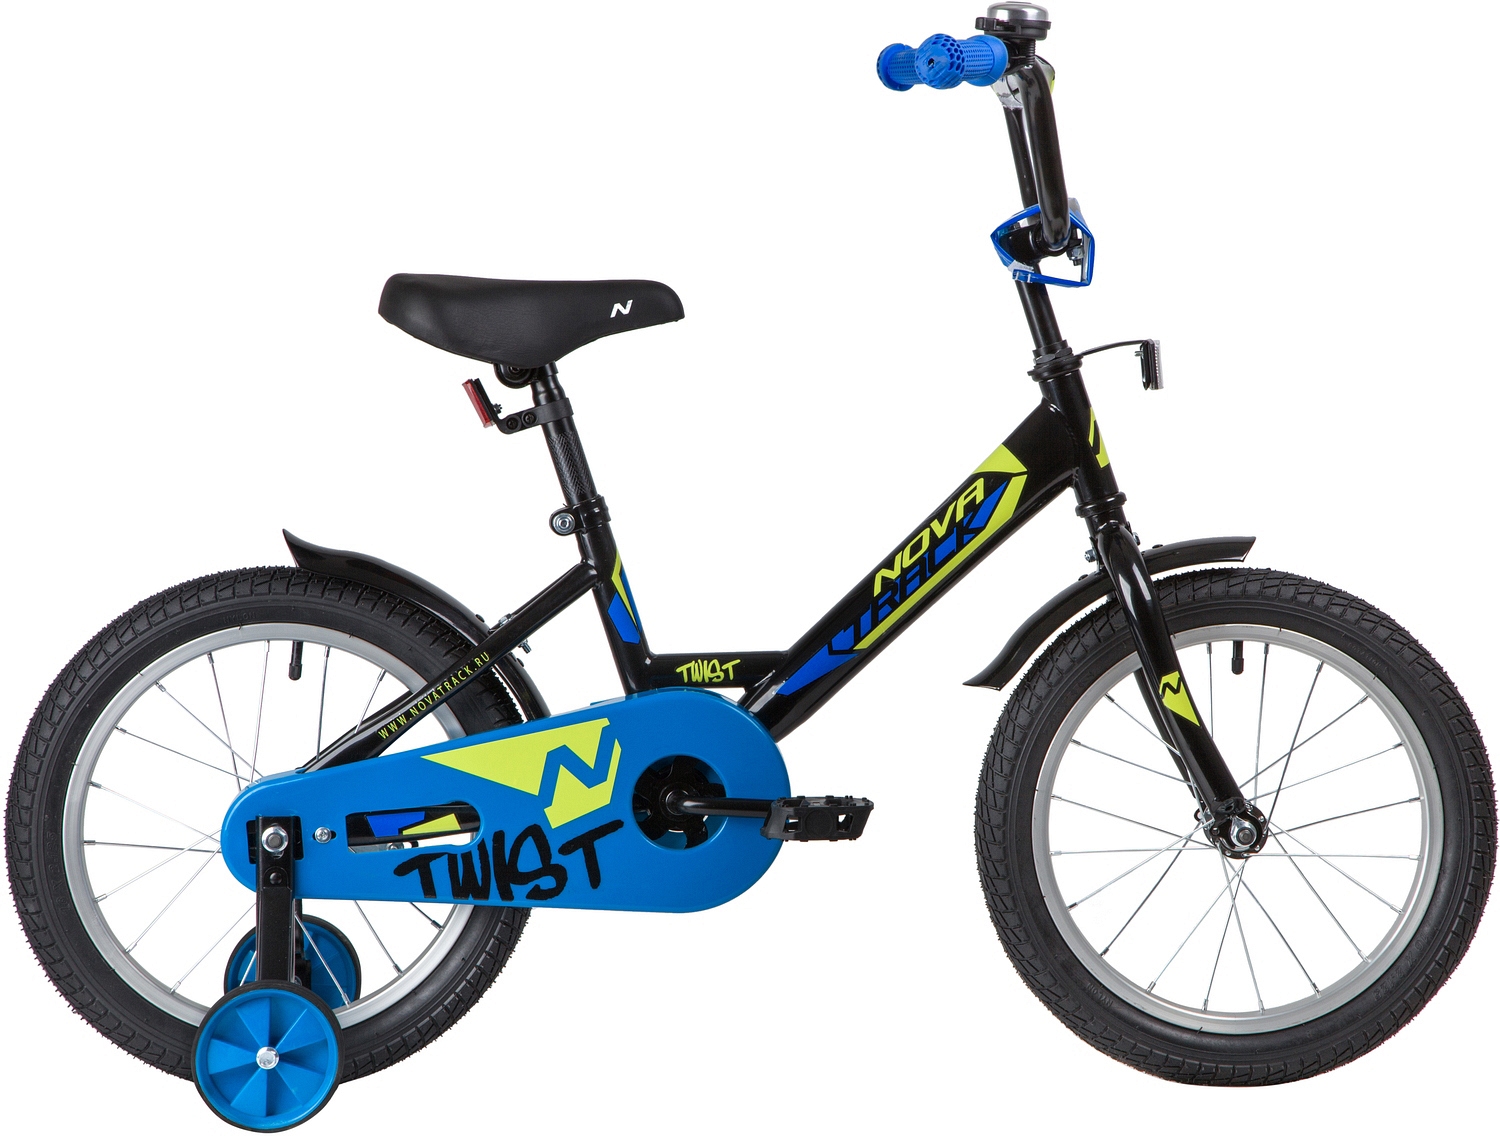  Отзывы о Детском велосипеде Novatrack Twist 16 2020